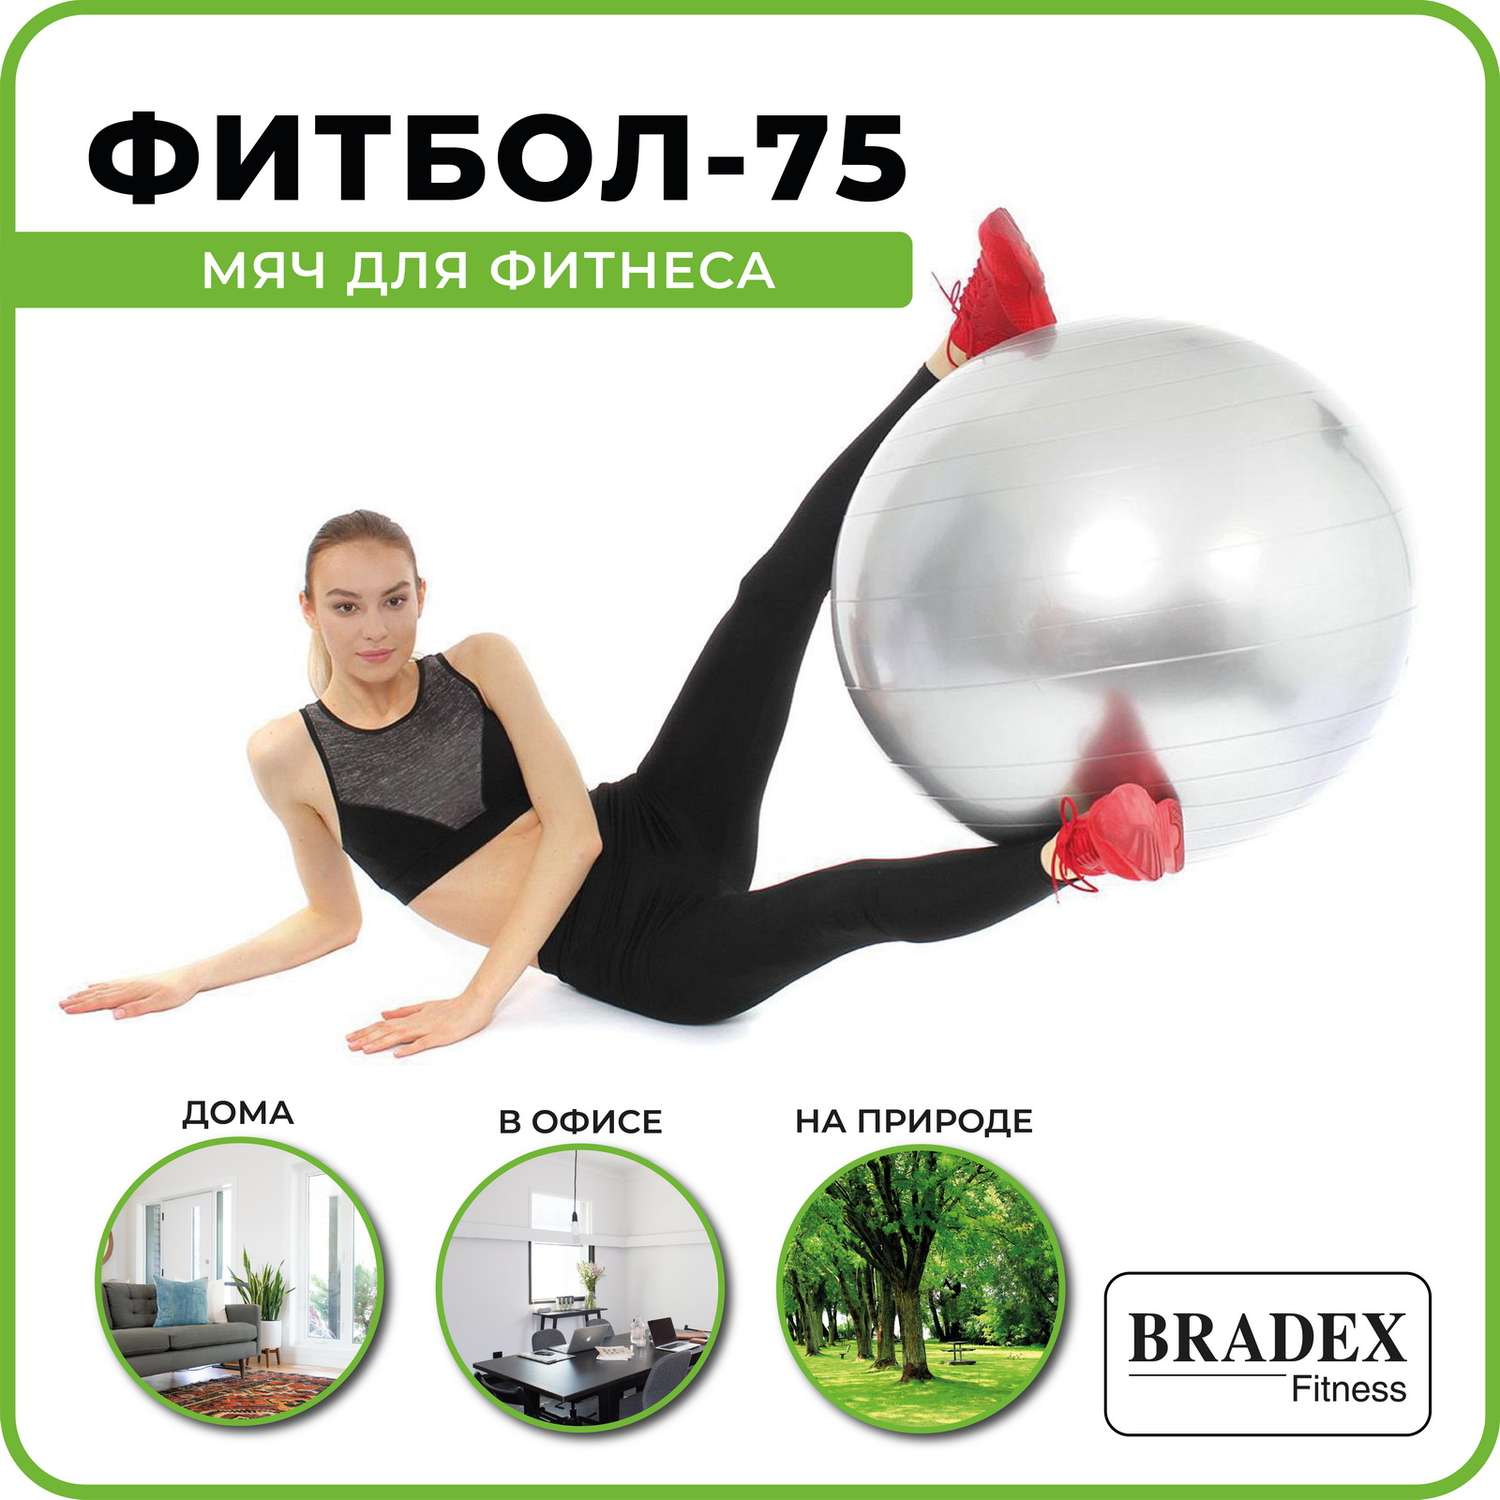 Фитбол мяч гимнастический Bradex для спорта и фитнеса 75 см - фото 5